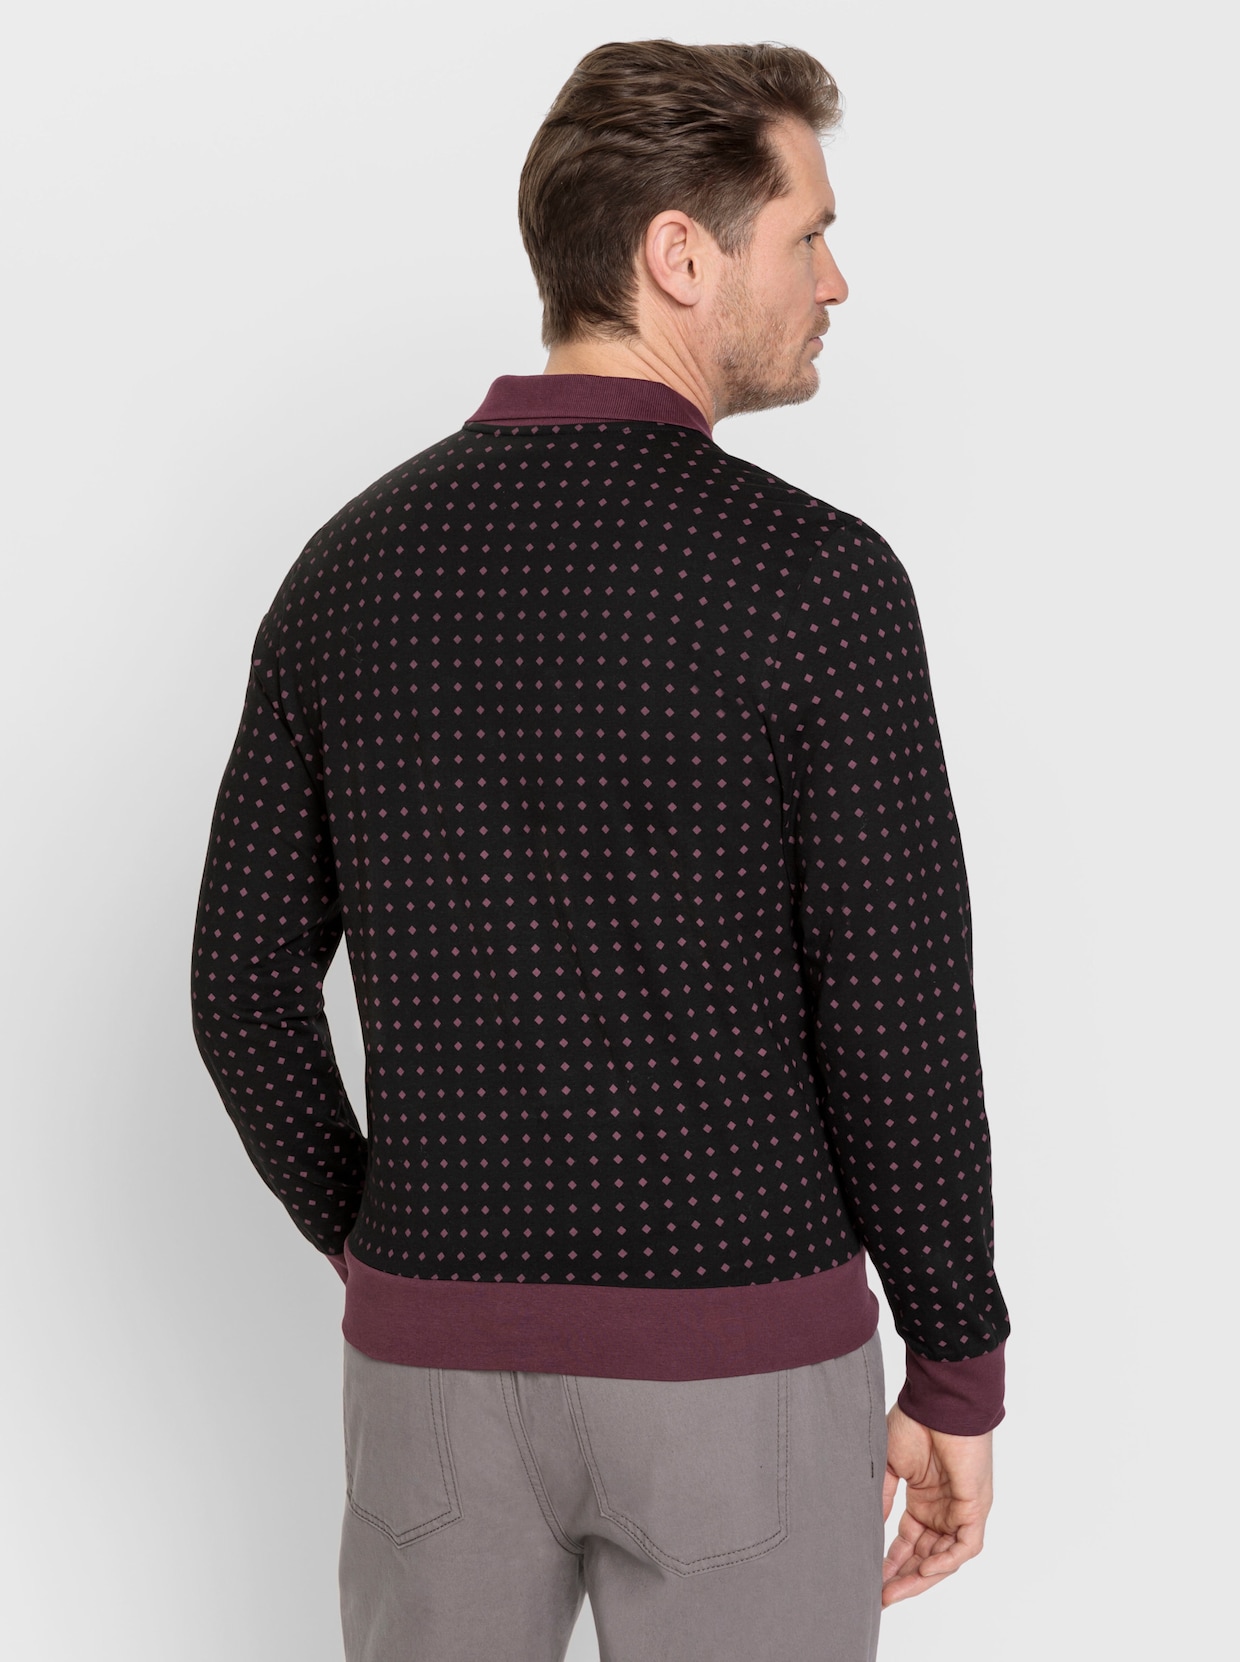 Marco Donati Langarm-Poloshirt - schwarz-burgund-gemustert